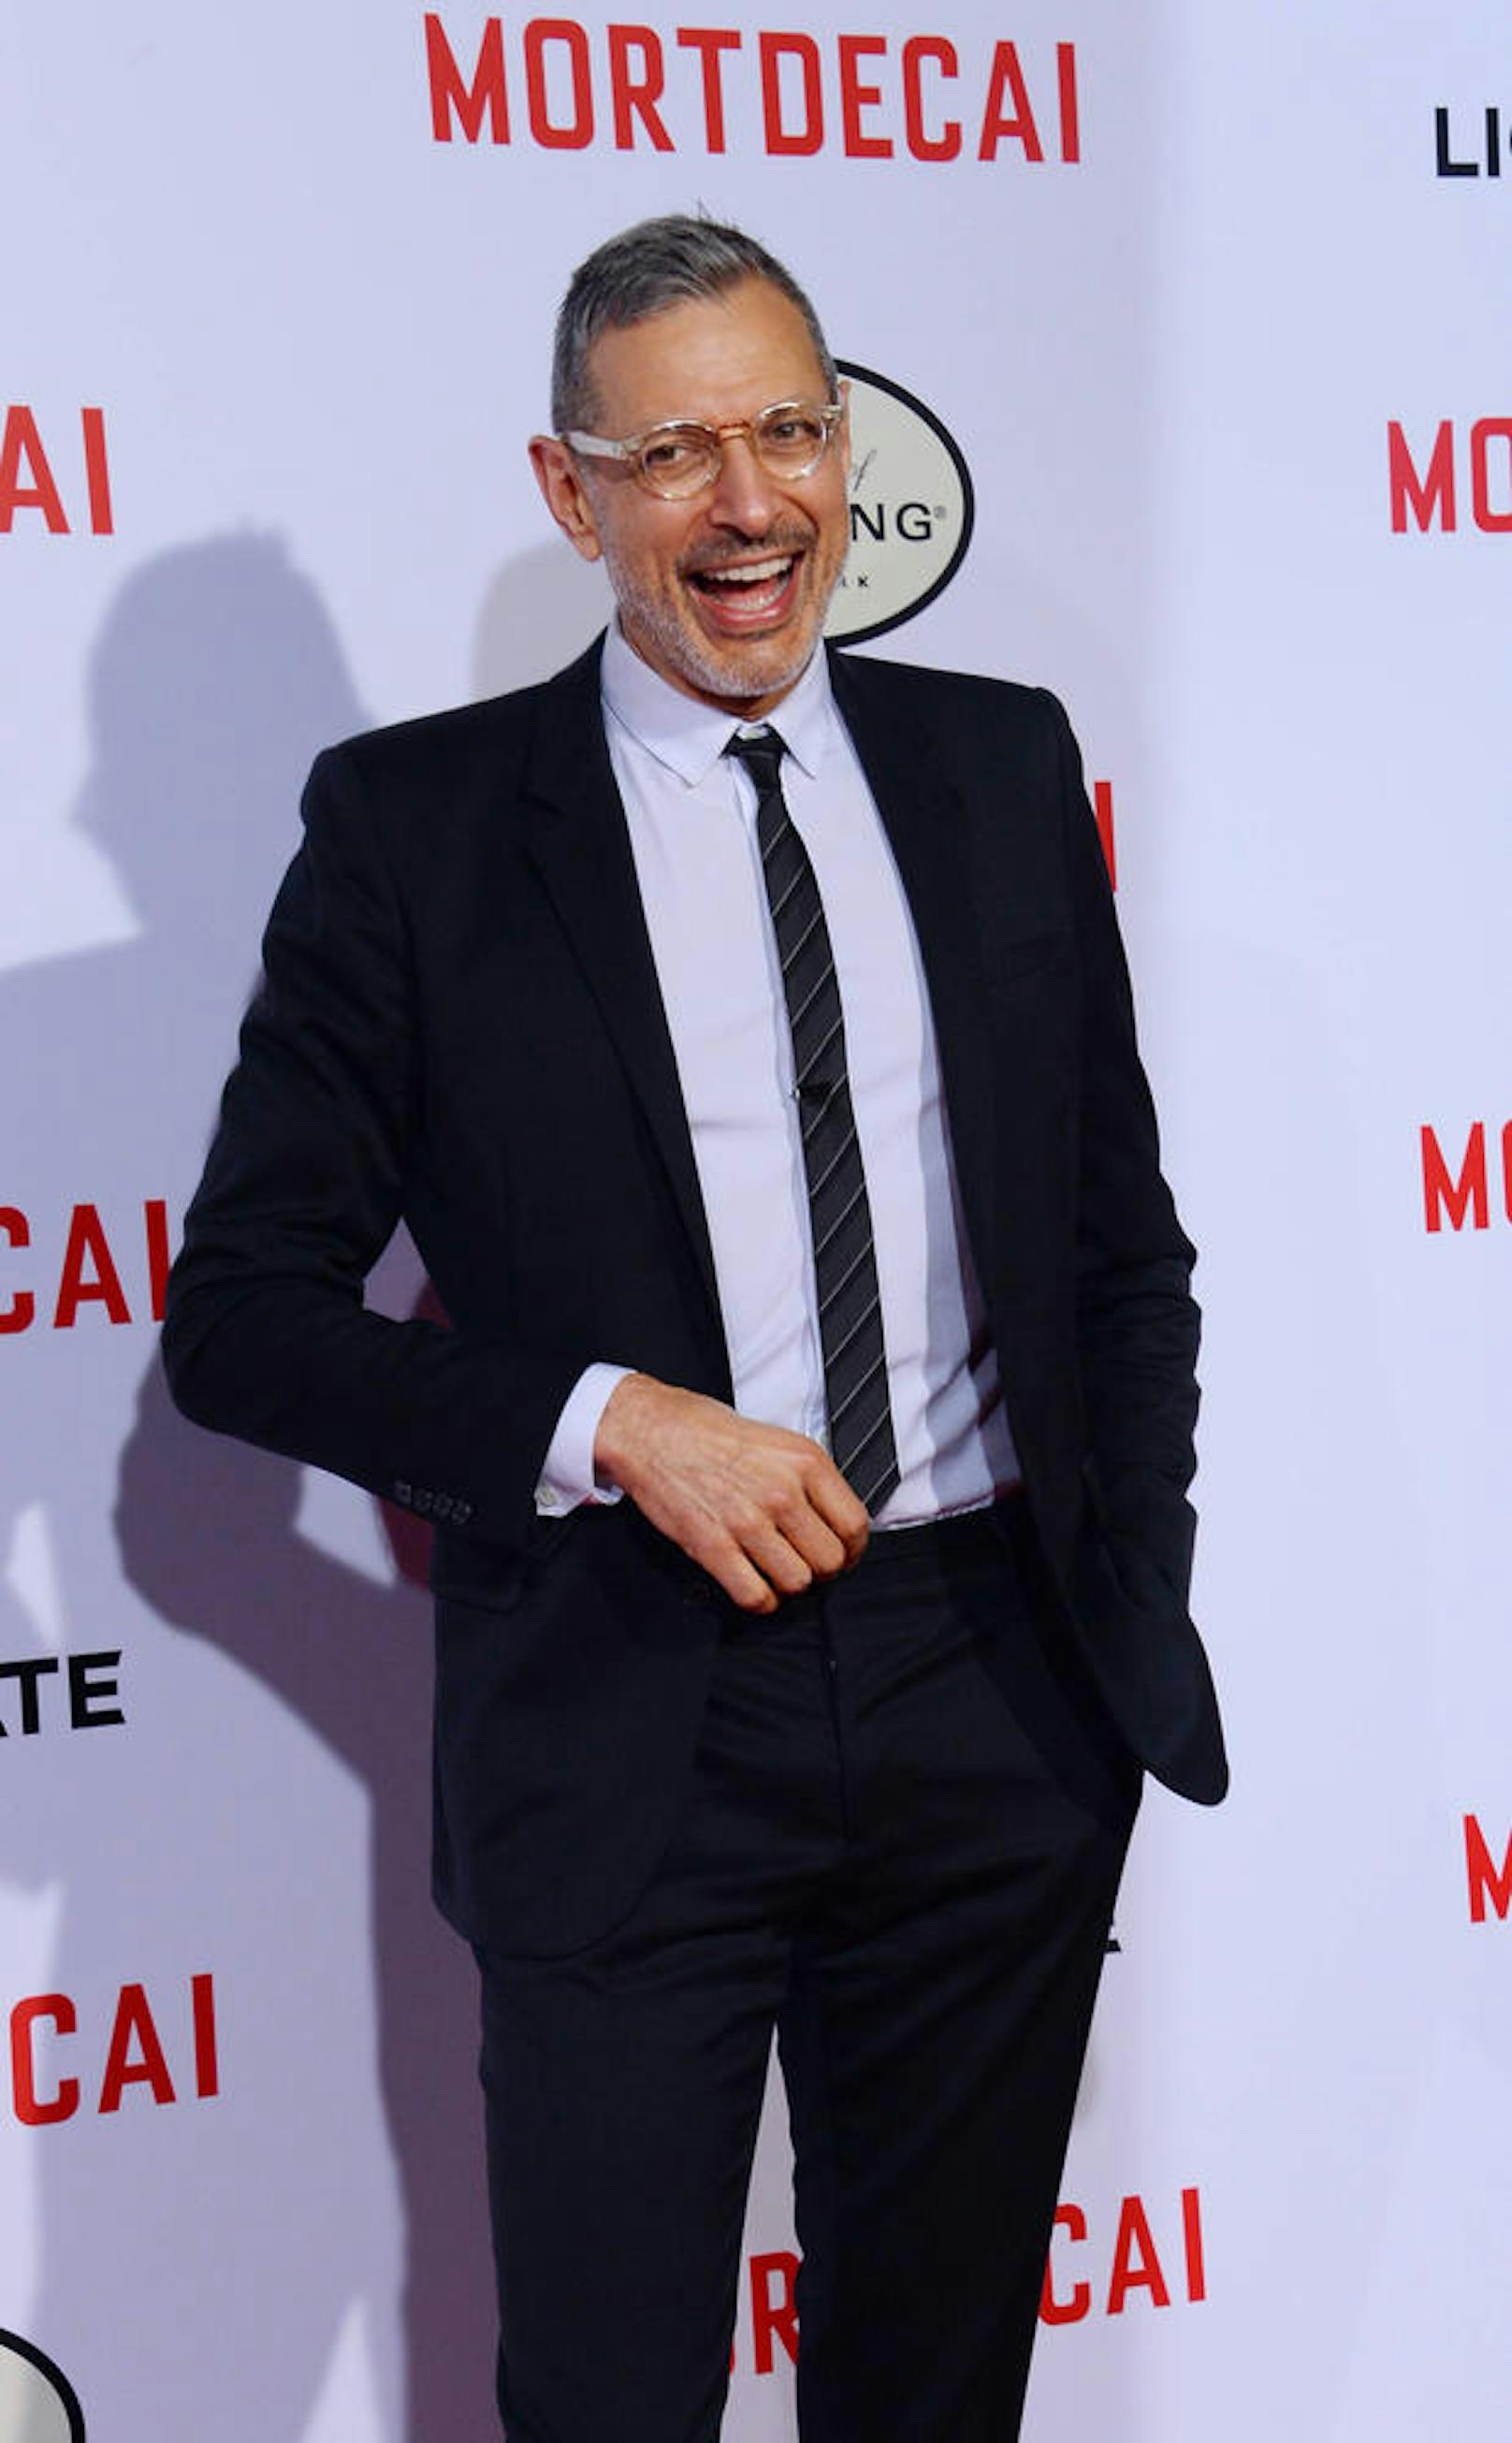 Jeff Goldblum auf der Premiere von "Mortdecai"